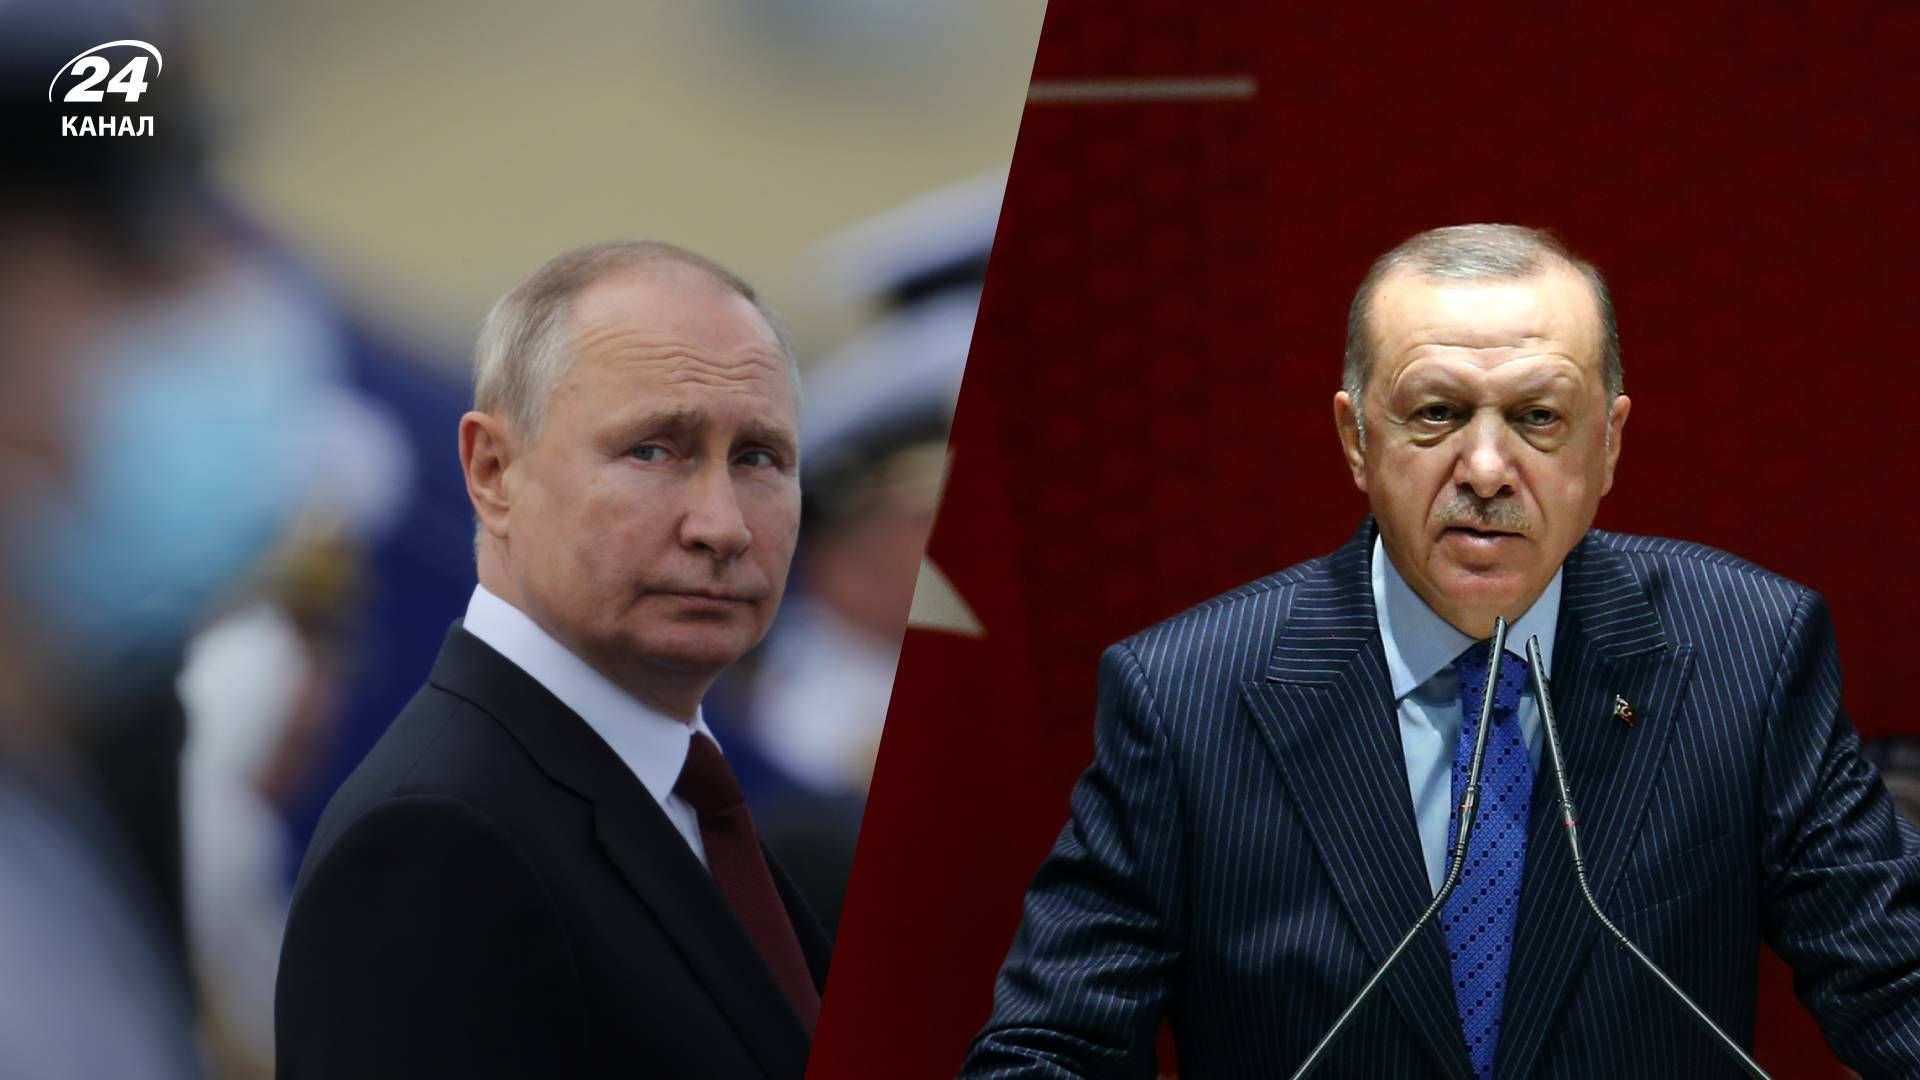 Турция начала военную операцию в Сирии - Эрдоган воспользовался слабостью Путина